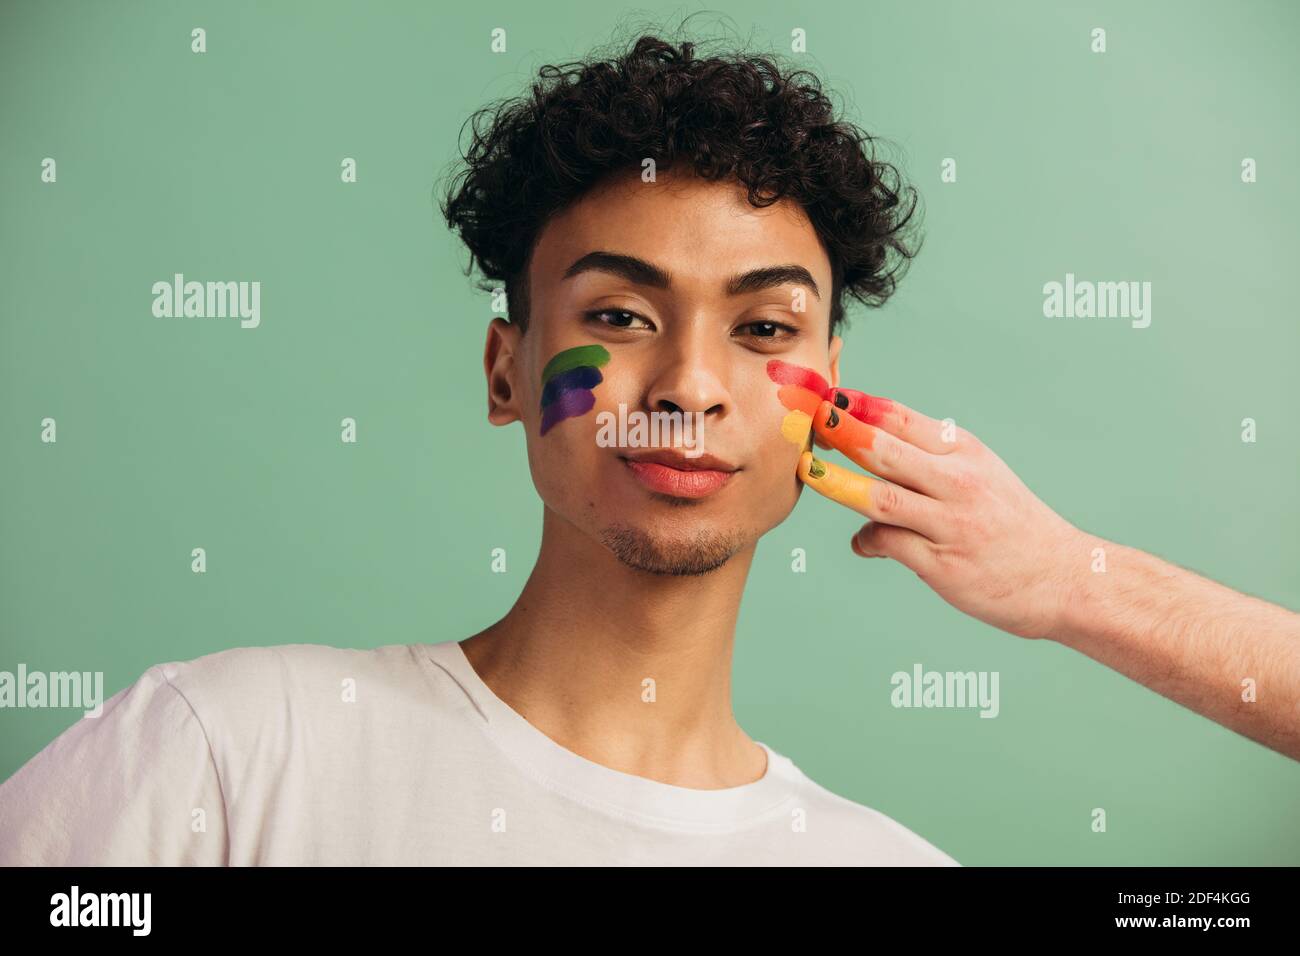 Portrait d'un jeune homme au visage peint avec un drapeau arc-en-ciel de fierté gay. Peinture à la main de couleur arc-en-ciel lgbt sur le visage d'un homme. Banque D'Images